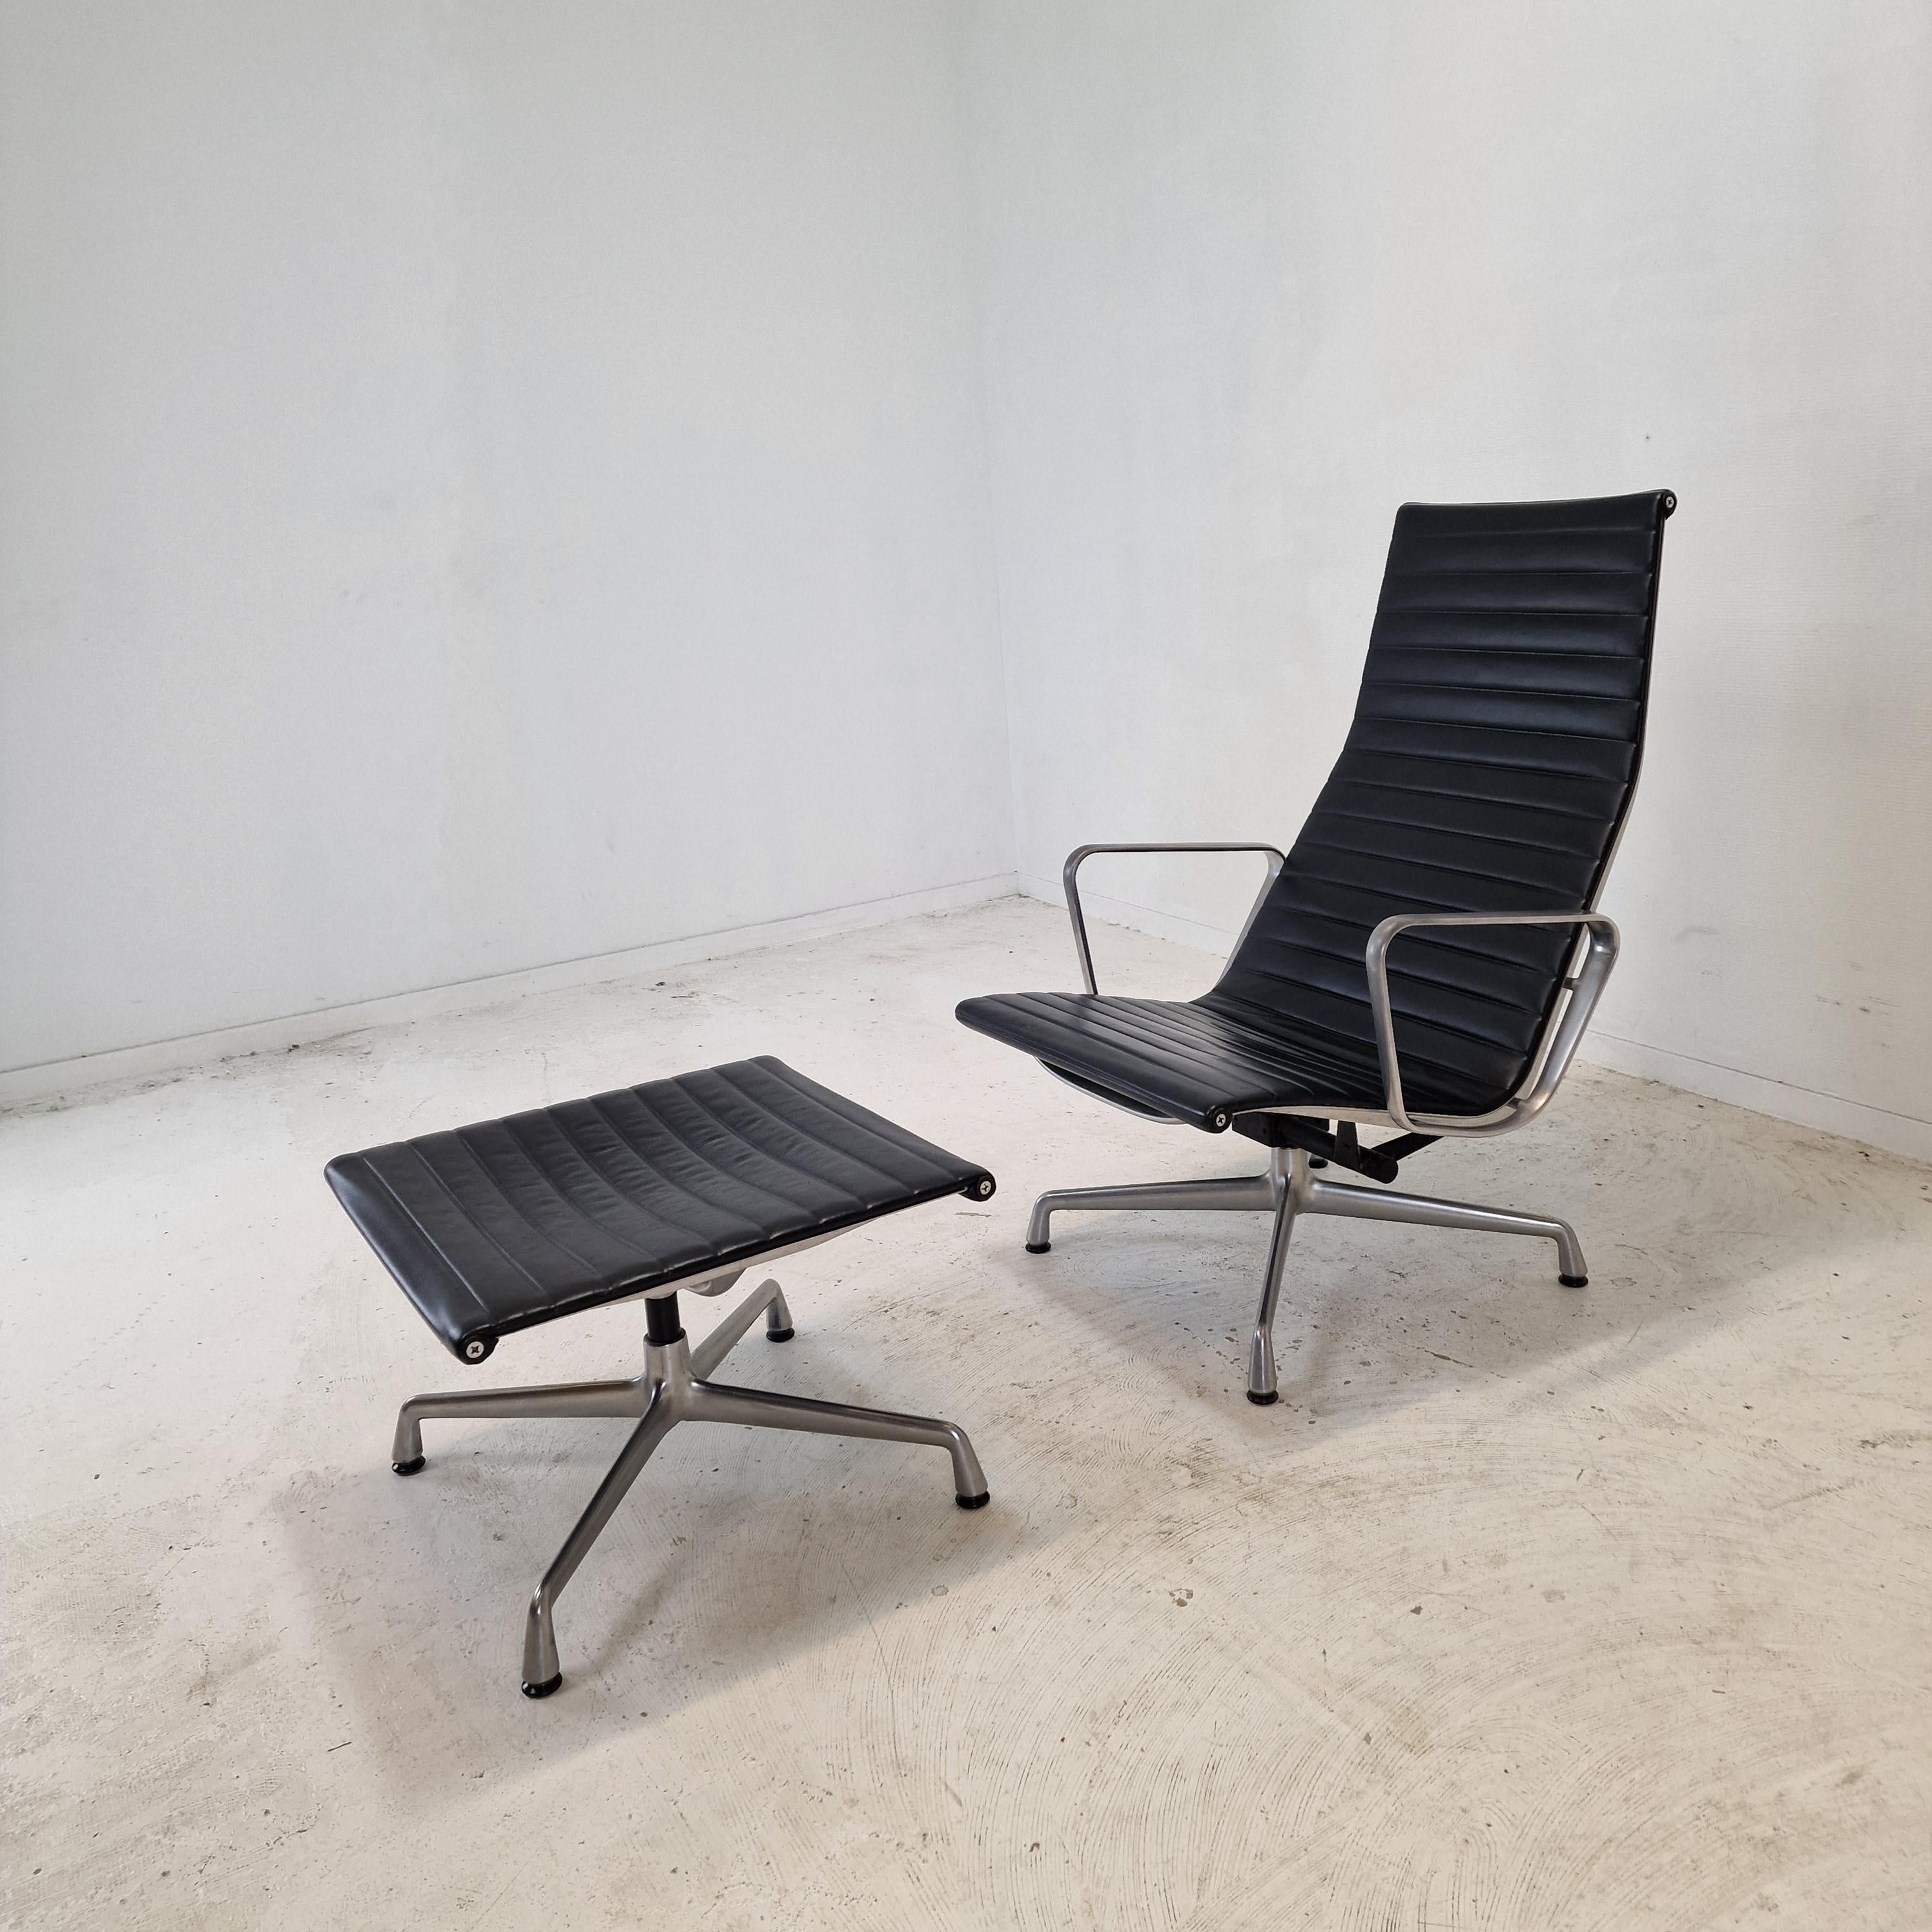 EA124 & EA125 Sessel und Hocker aus Aluminium von Charles und Ray Eames für Vitra, hergestellt 1999.

Die Aluminiumsessel und -hocker EA124 & EA125 gehören zu den größten Möbelentwürfen des 20. Jahrhunderts. 
Charles und Ray Eames entwarfen den